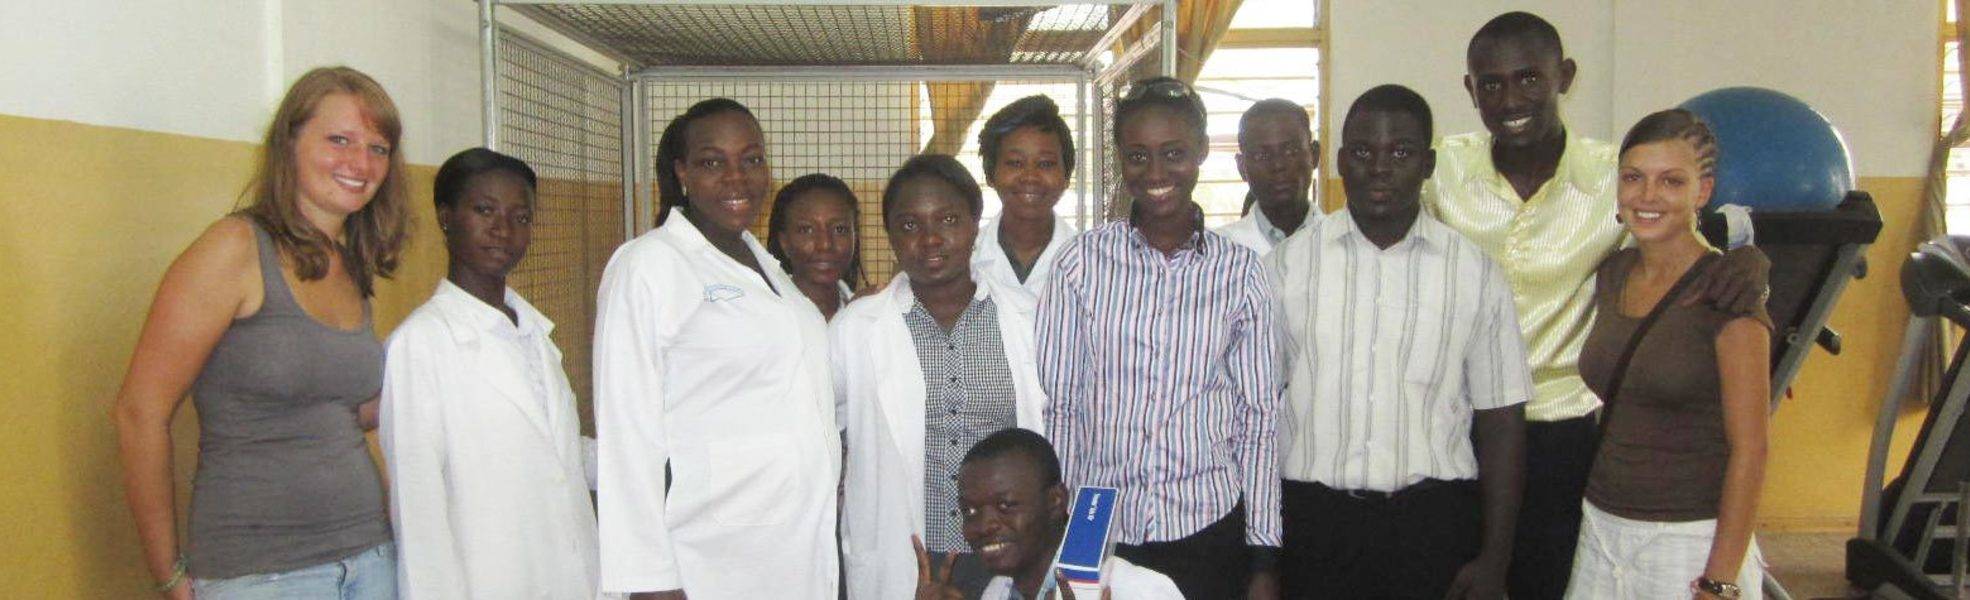 Freiwilligenarbeit auf Sansibar im Bereich Medizin